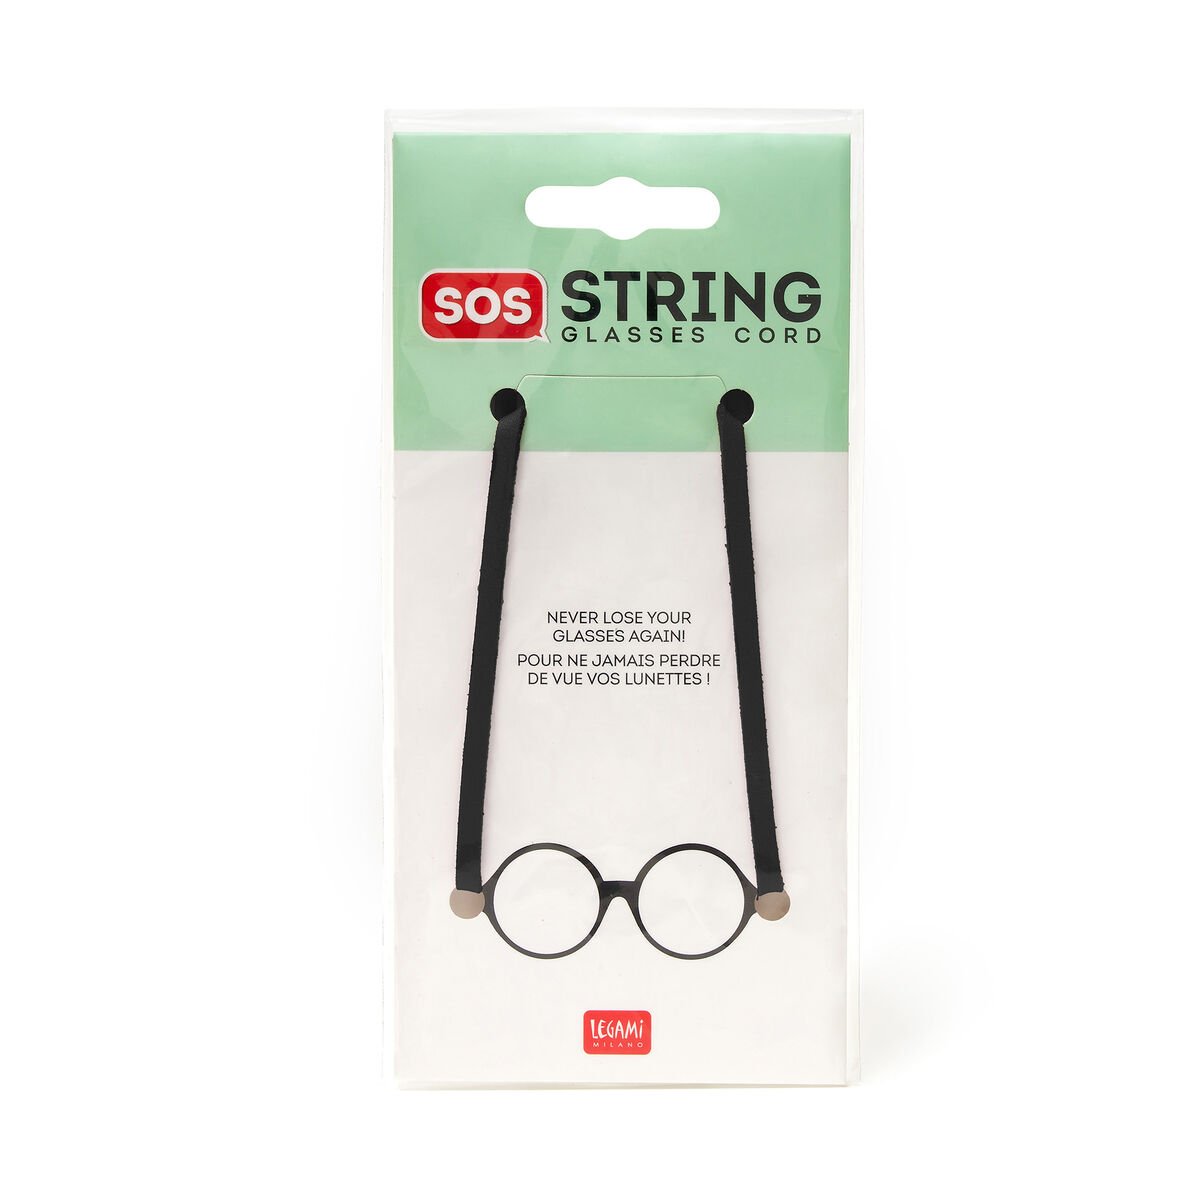 Cordón para Gafas - SOS String, , zoo